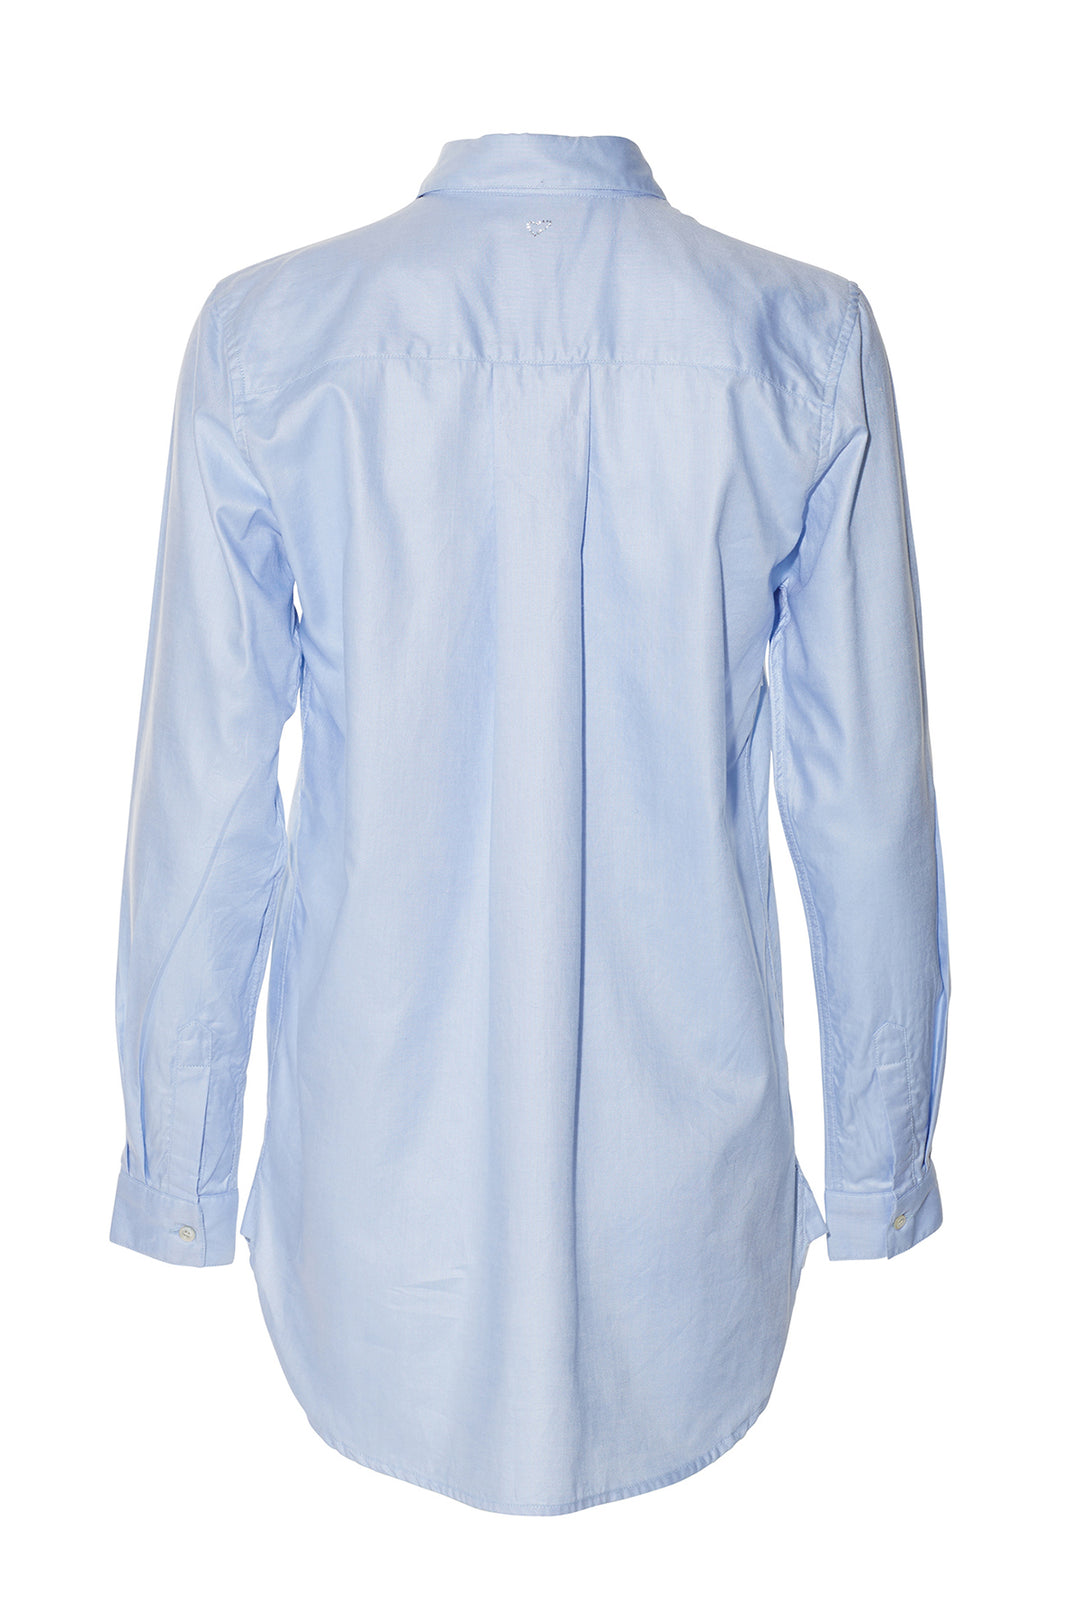 Heartmade Marlis shirt HM SHIRTS 21 Light blue